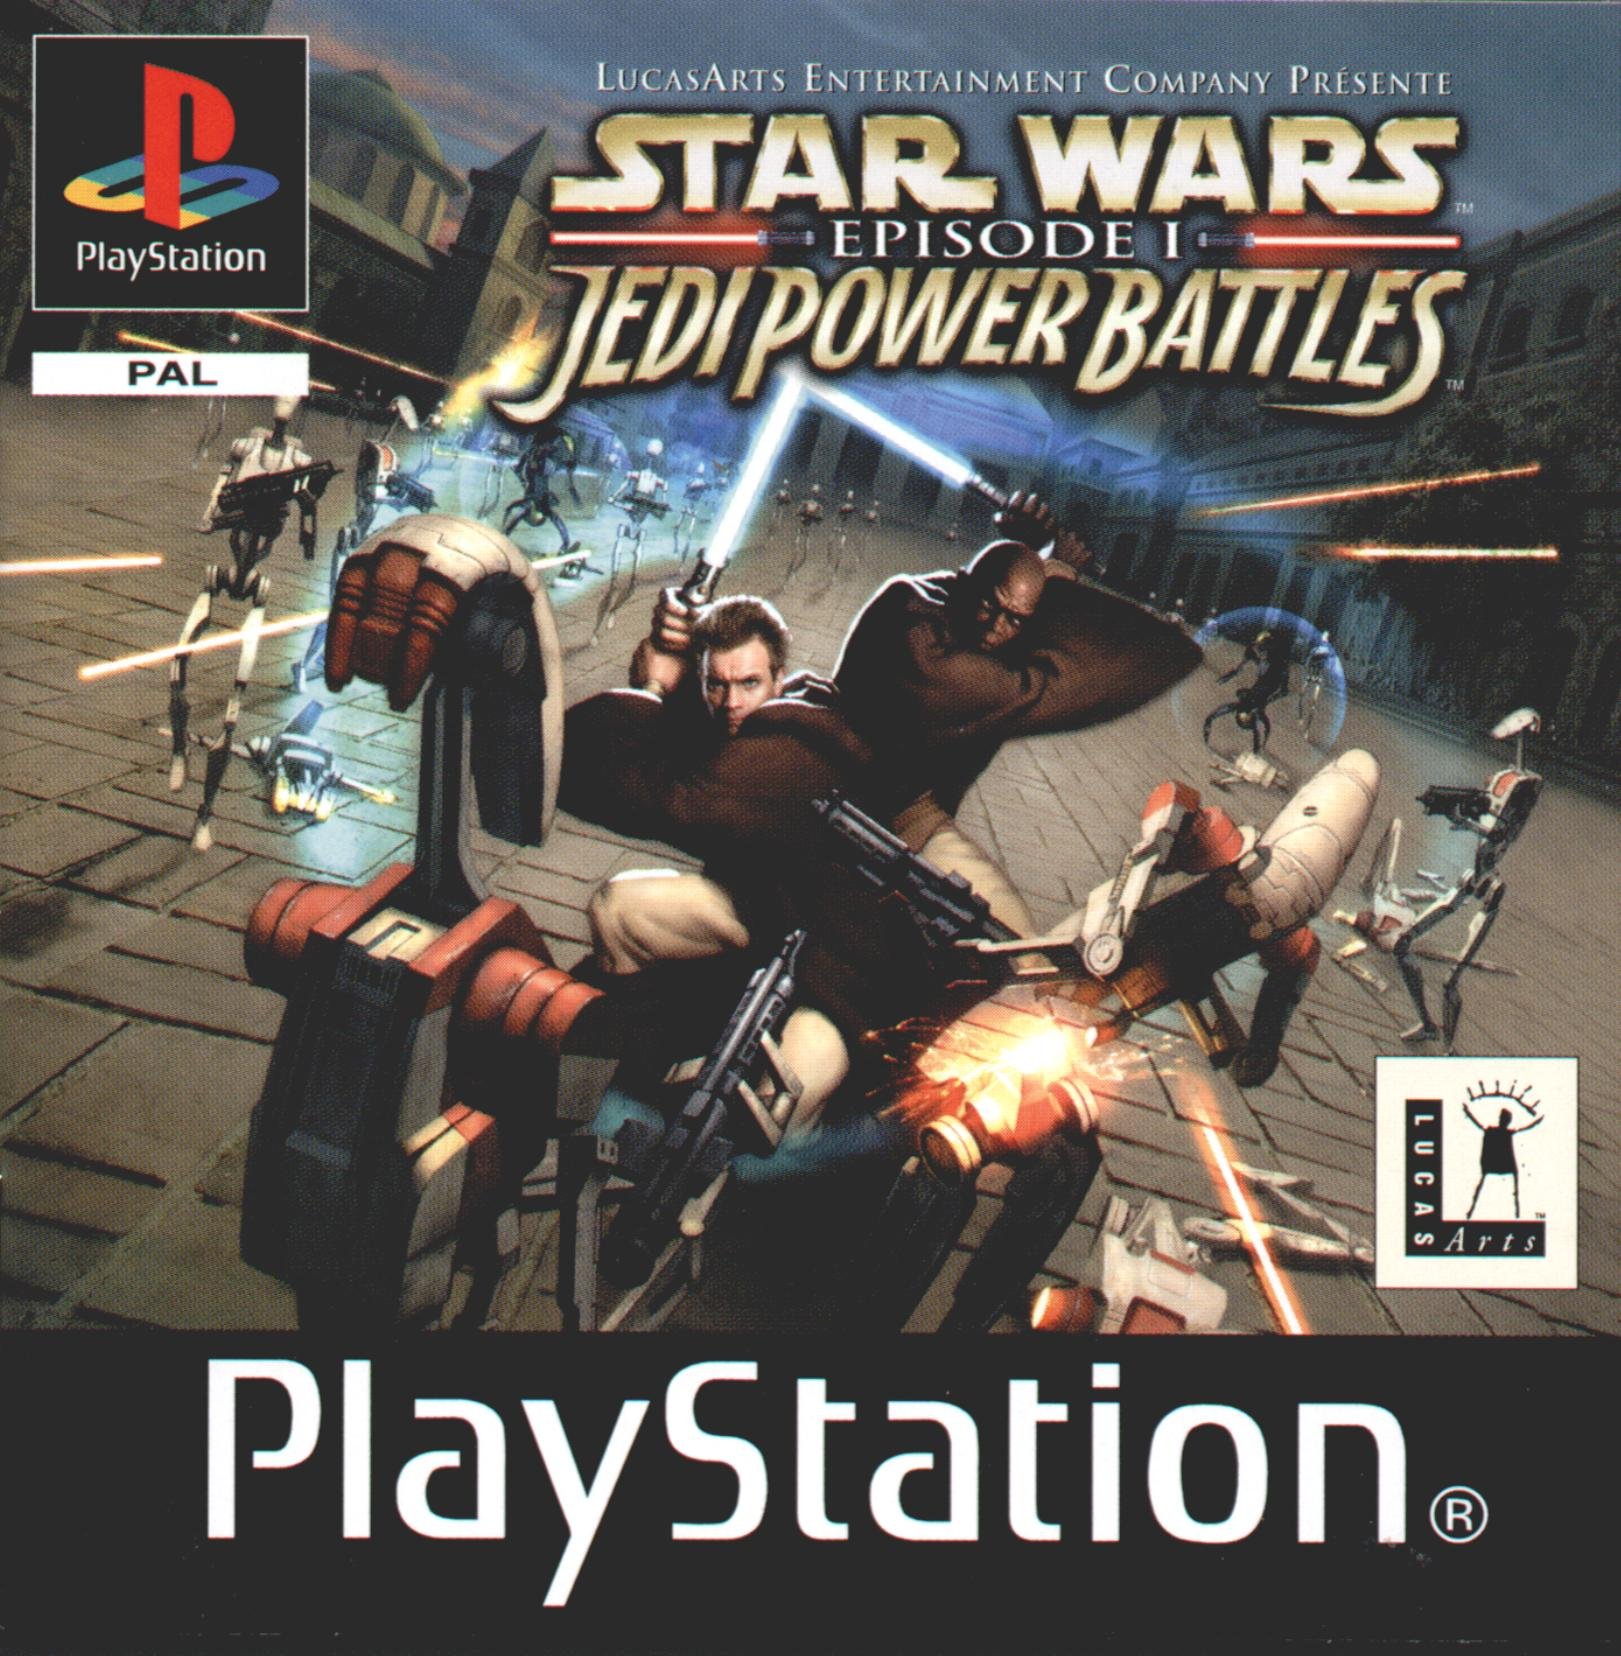 Star wars episode i jedi power. Star Wars Sony PLAYSTATION 1. Star Wars Episode i: Jedi Power Battles игра. Star Wars игры на ps1. Sony PLAYSTATION 1 Jedi Power Battles.